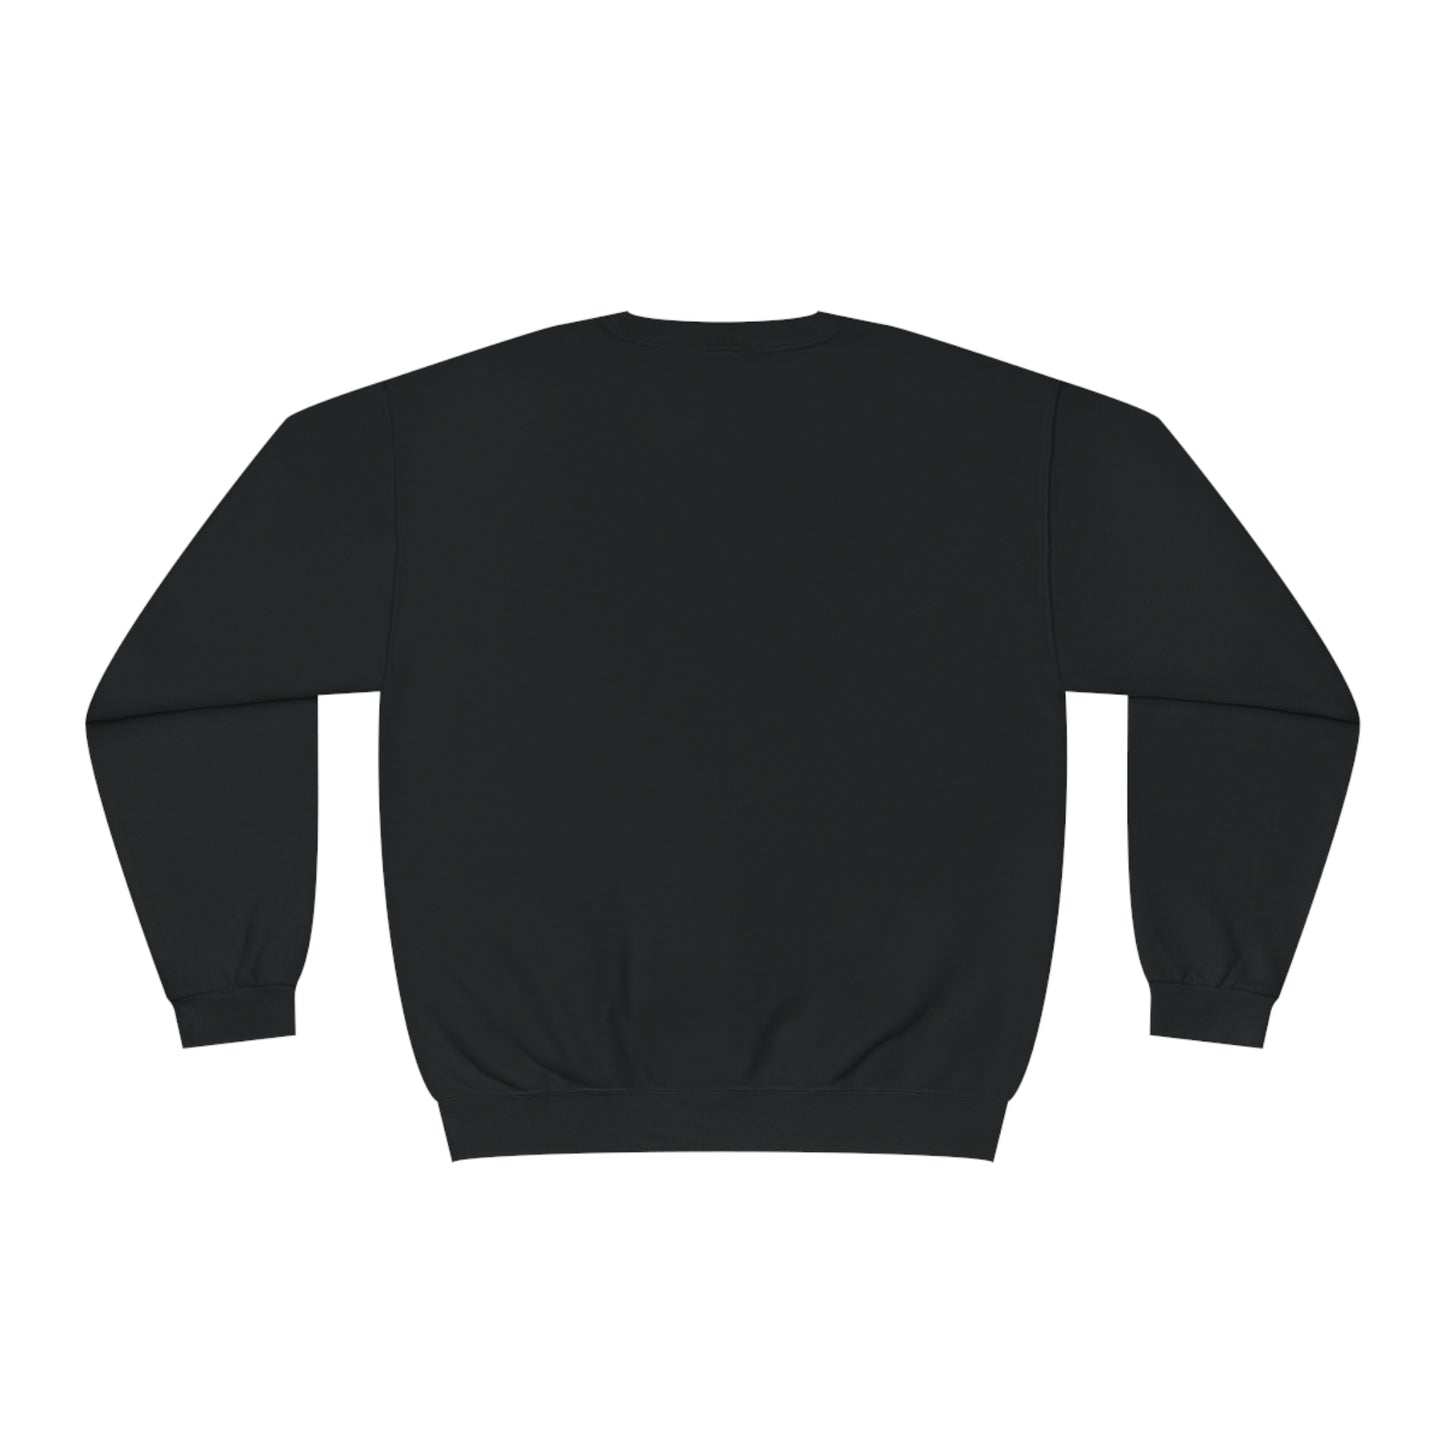 Heal Your Sh*t Eco-Luxury Unisex Crewneck Sweatshirt